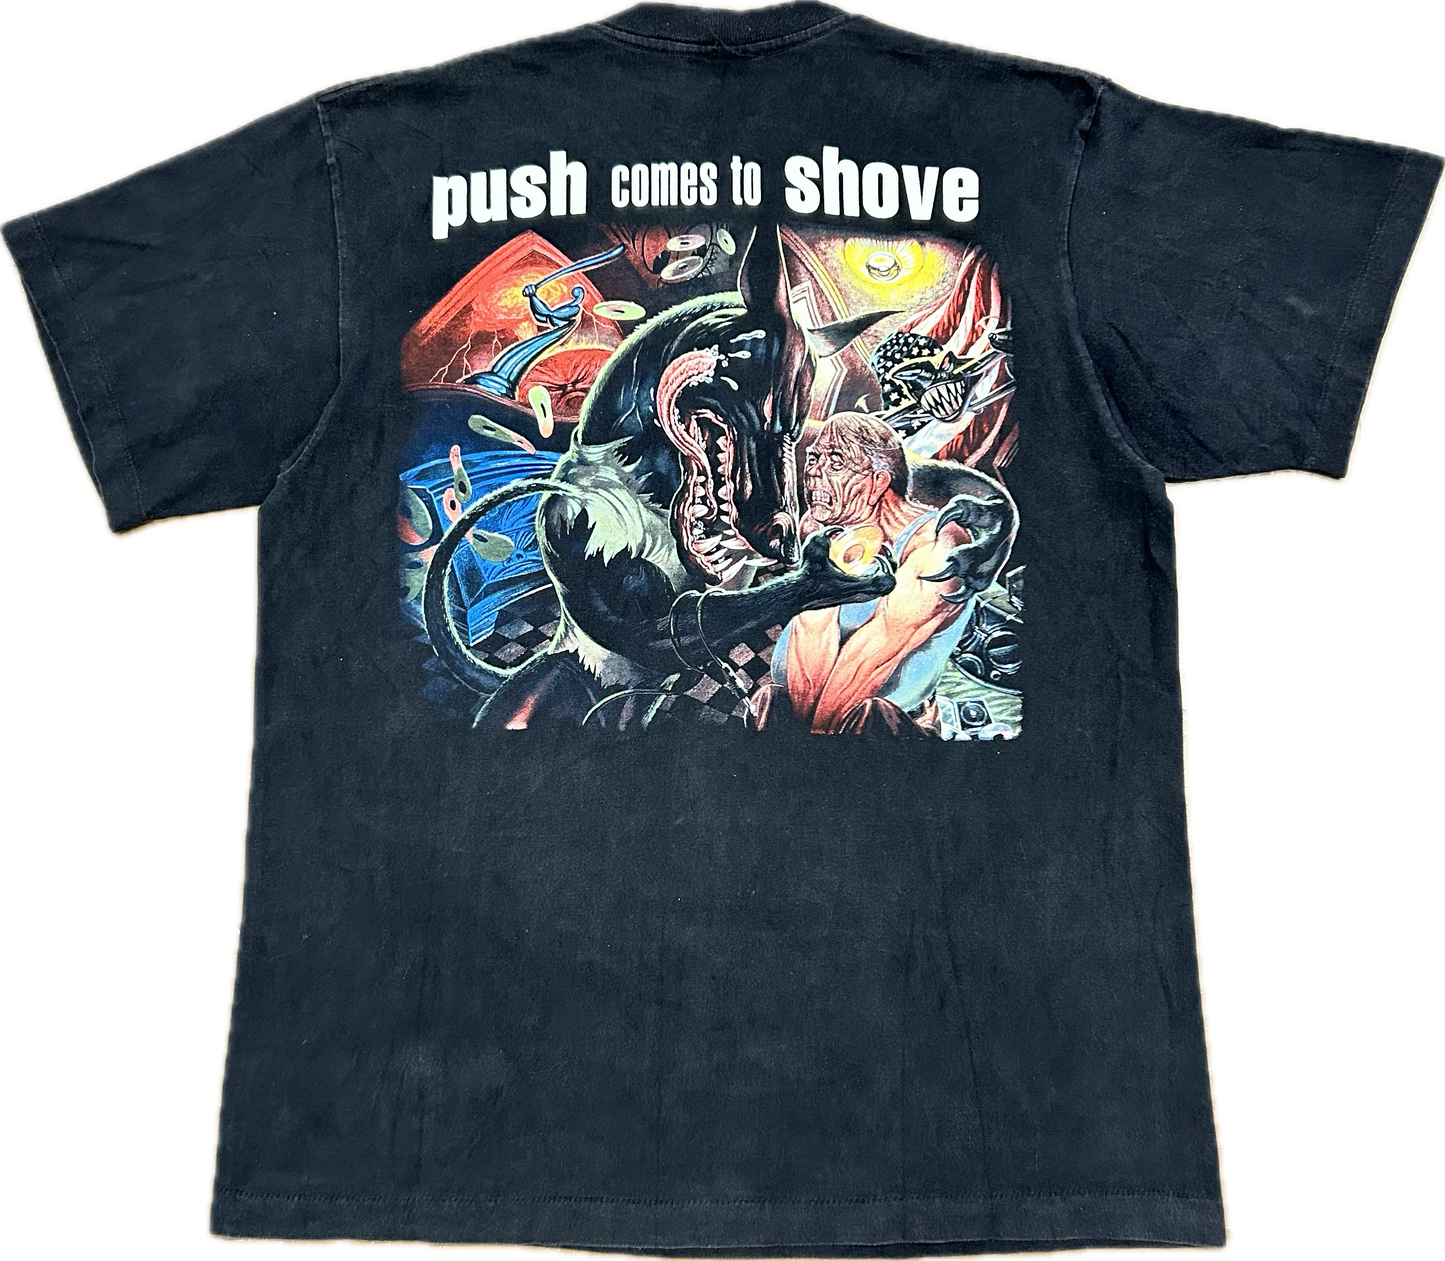 1994 Jackyl ‘Push Comes To Shove’ Tshirt Sz XL